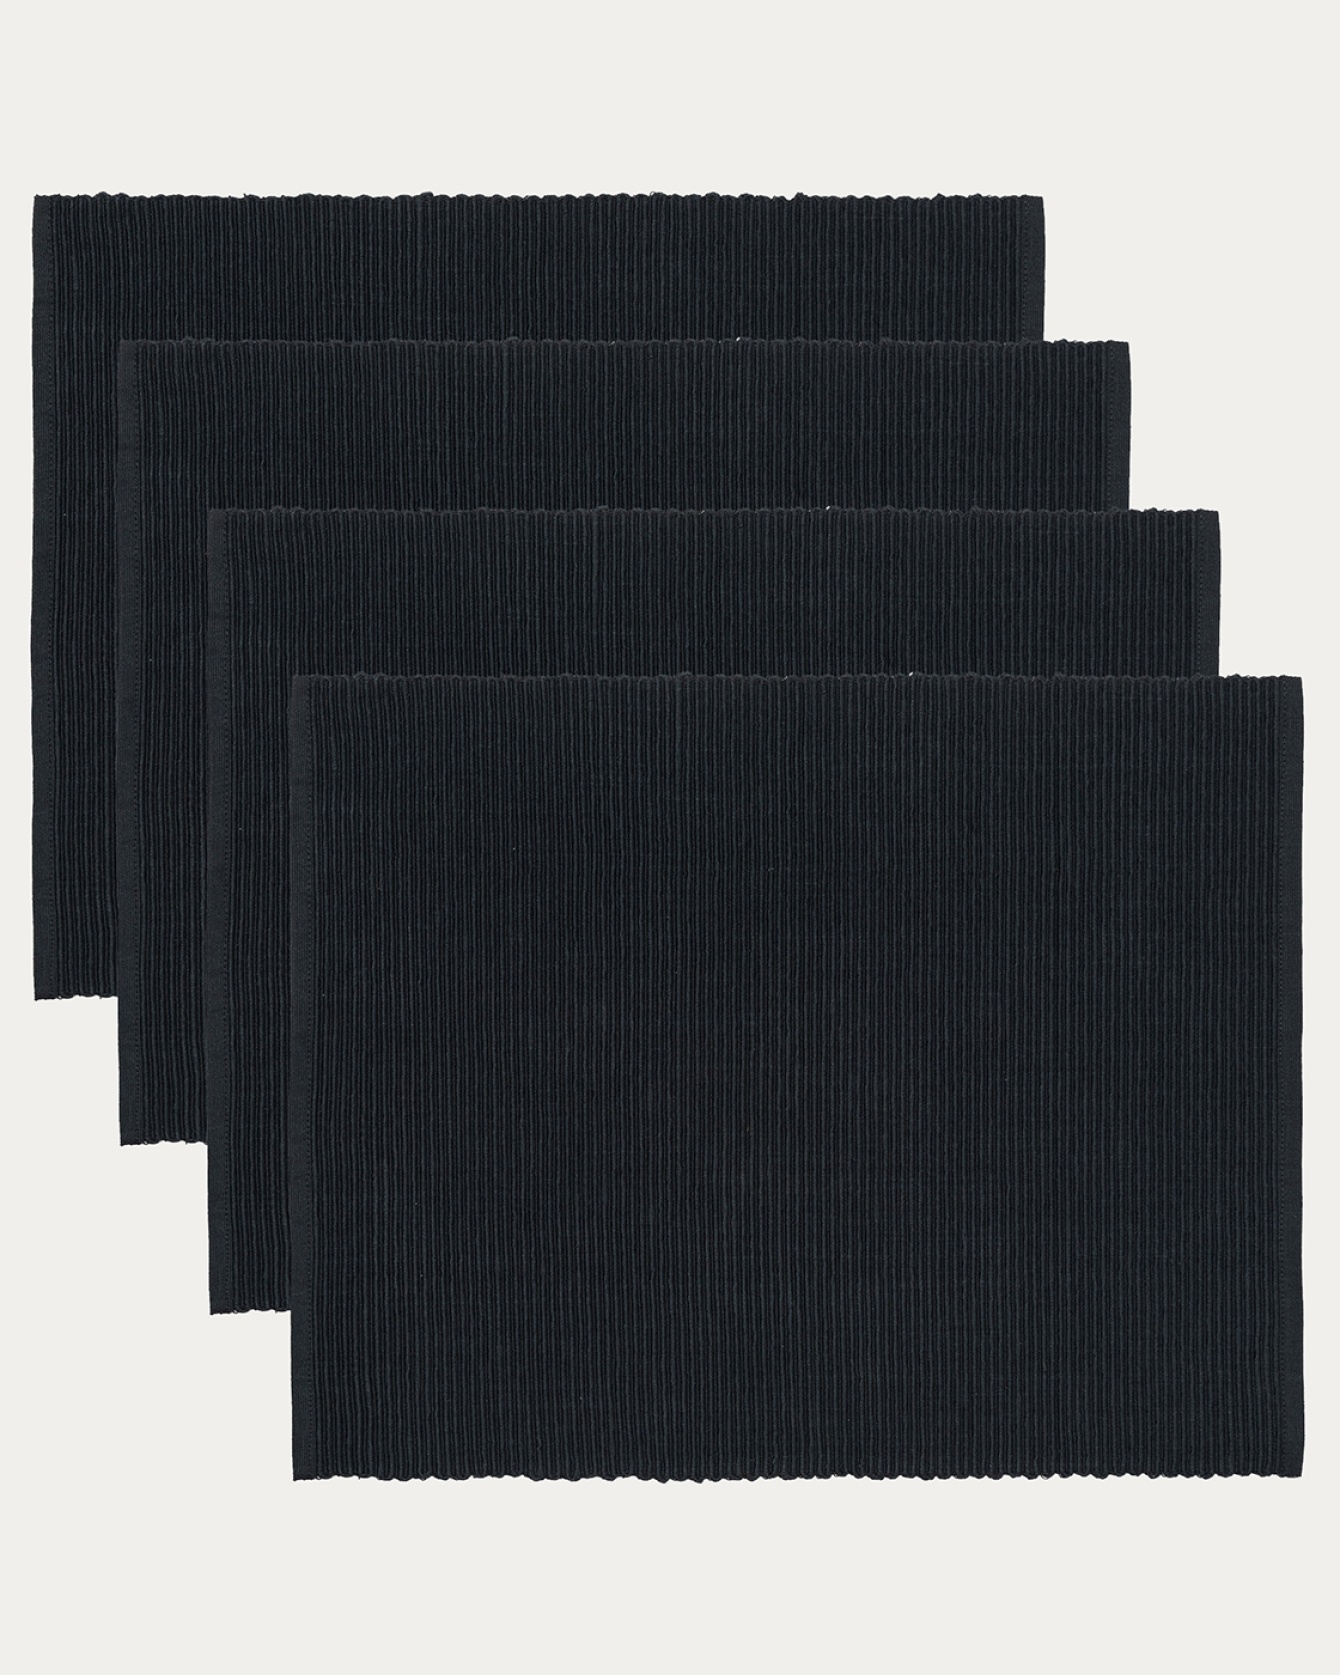 Produktbild schwarz UNI Tischset aus weicher Baumwolle in Rippenqualität von LINUM DESIGN. Größe 35x46 cm und in 4er-Pack verkauft.